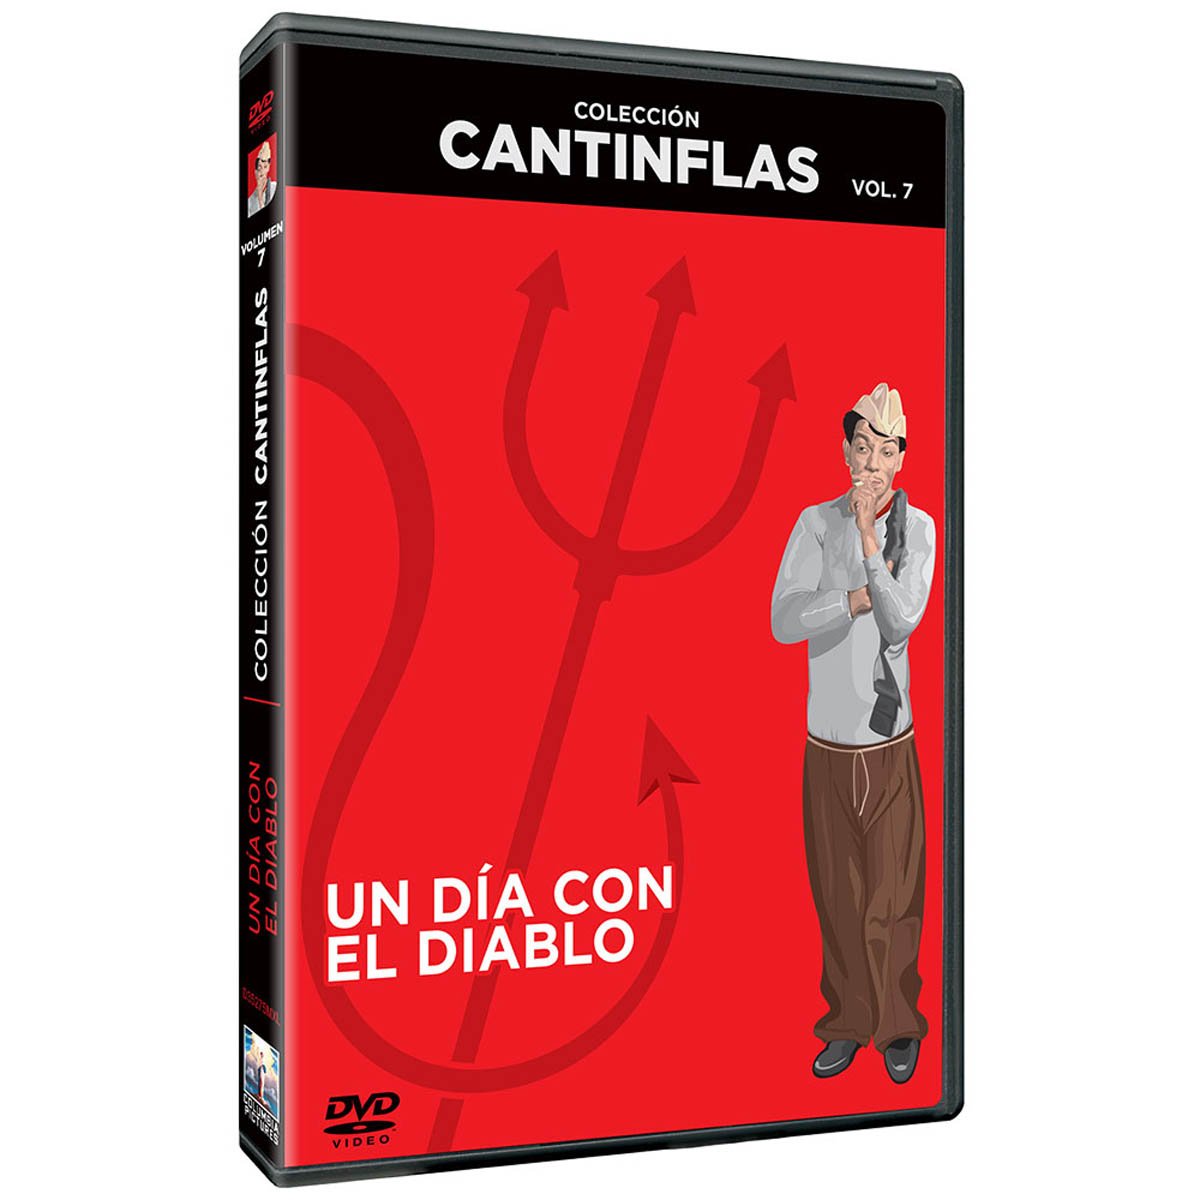 Dvd Coleccion Cantinflas un Dia con el Diablo